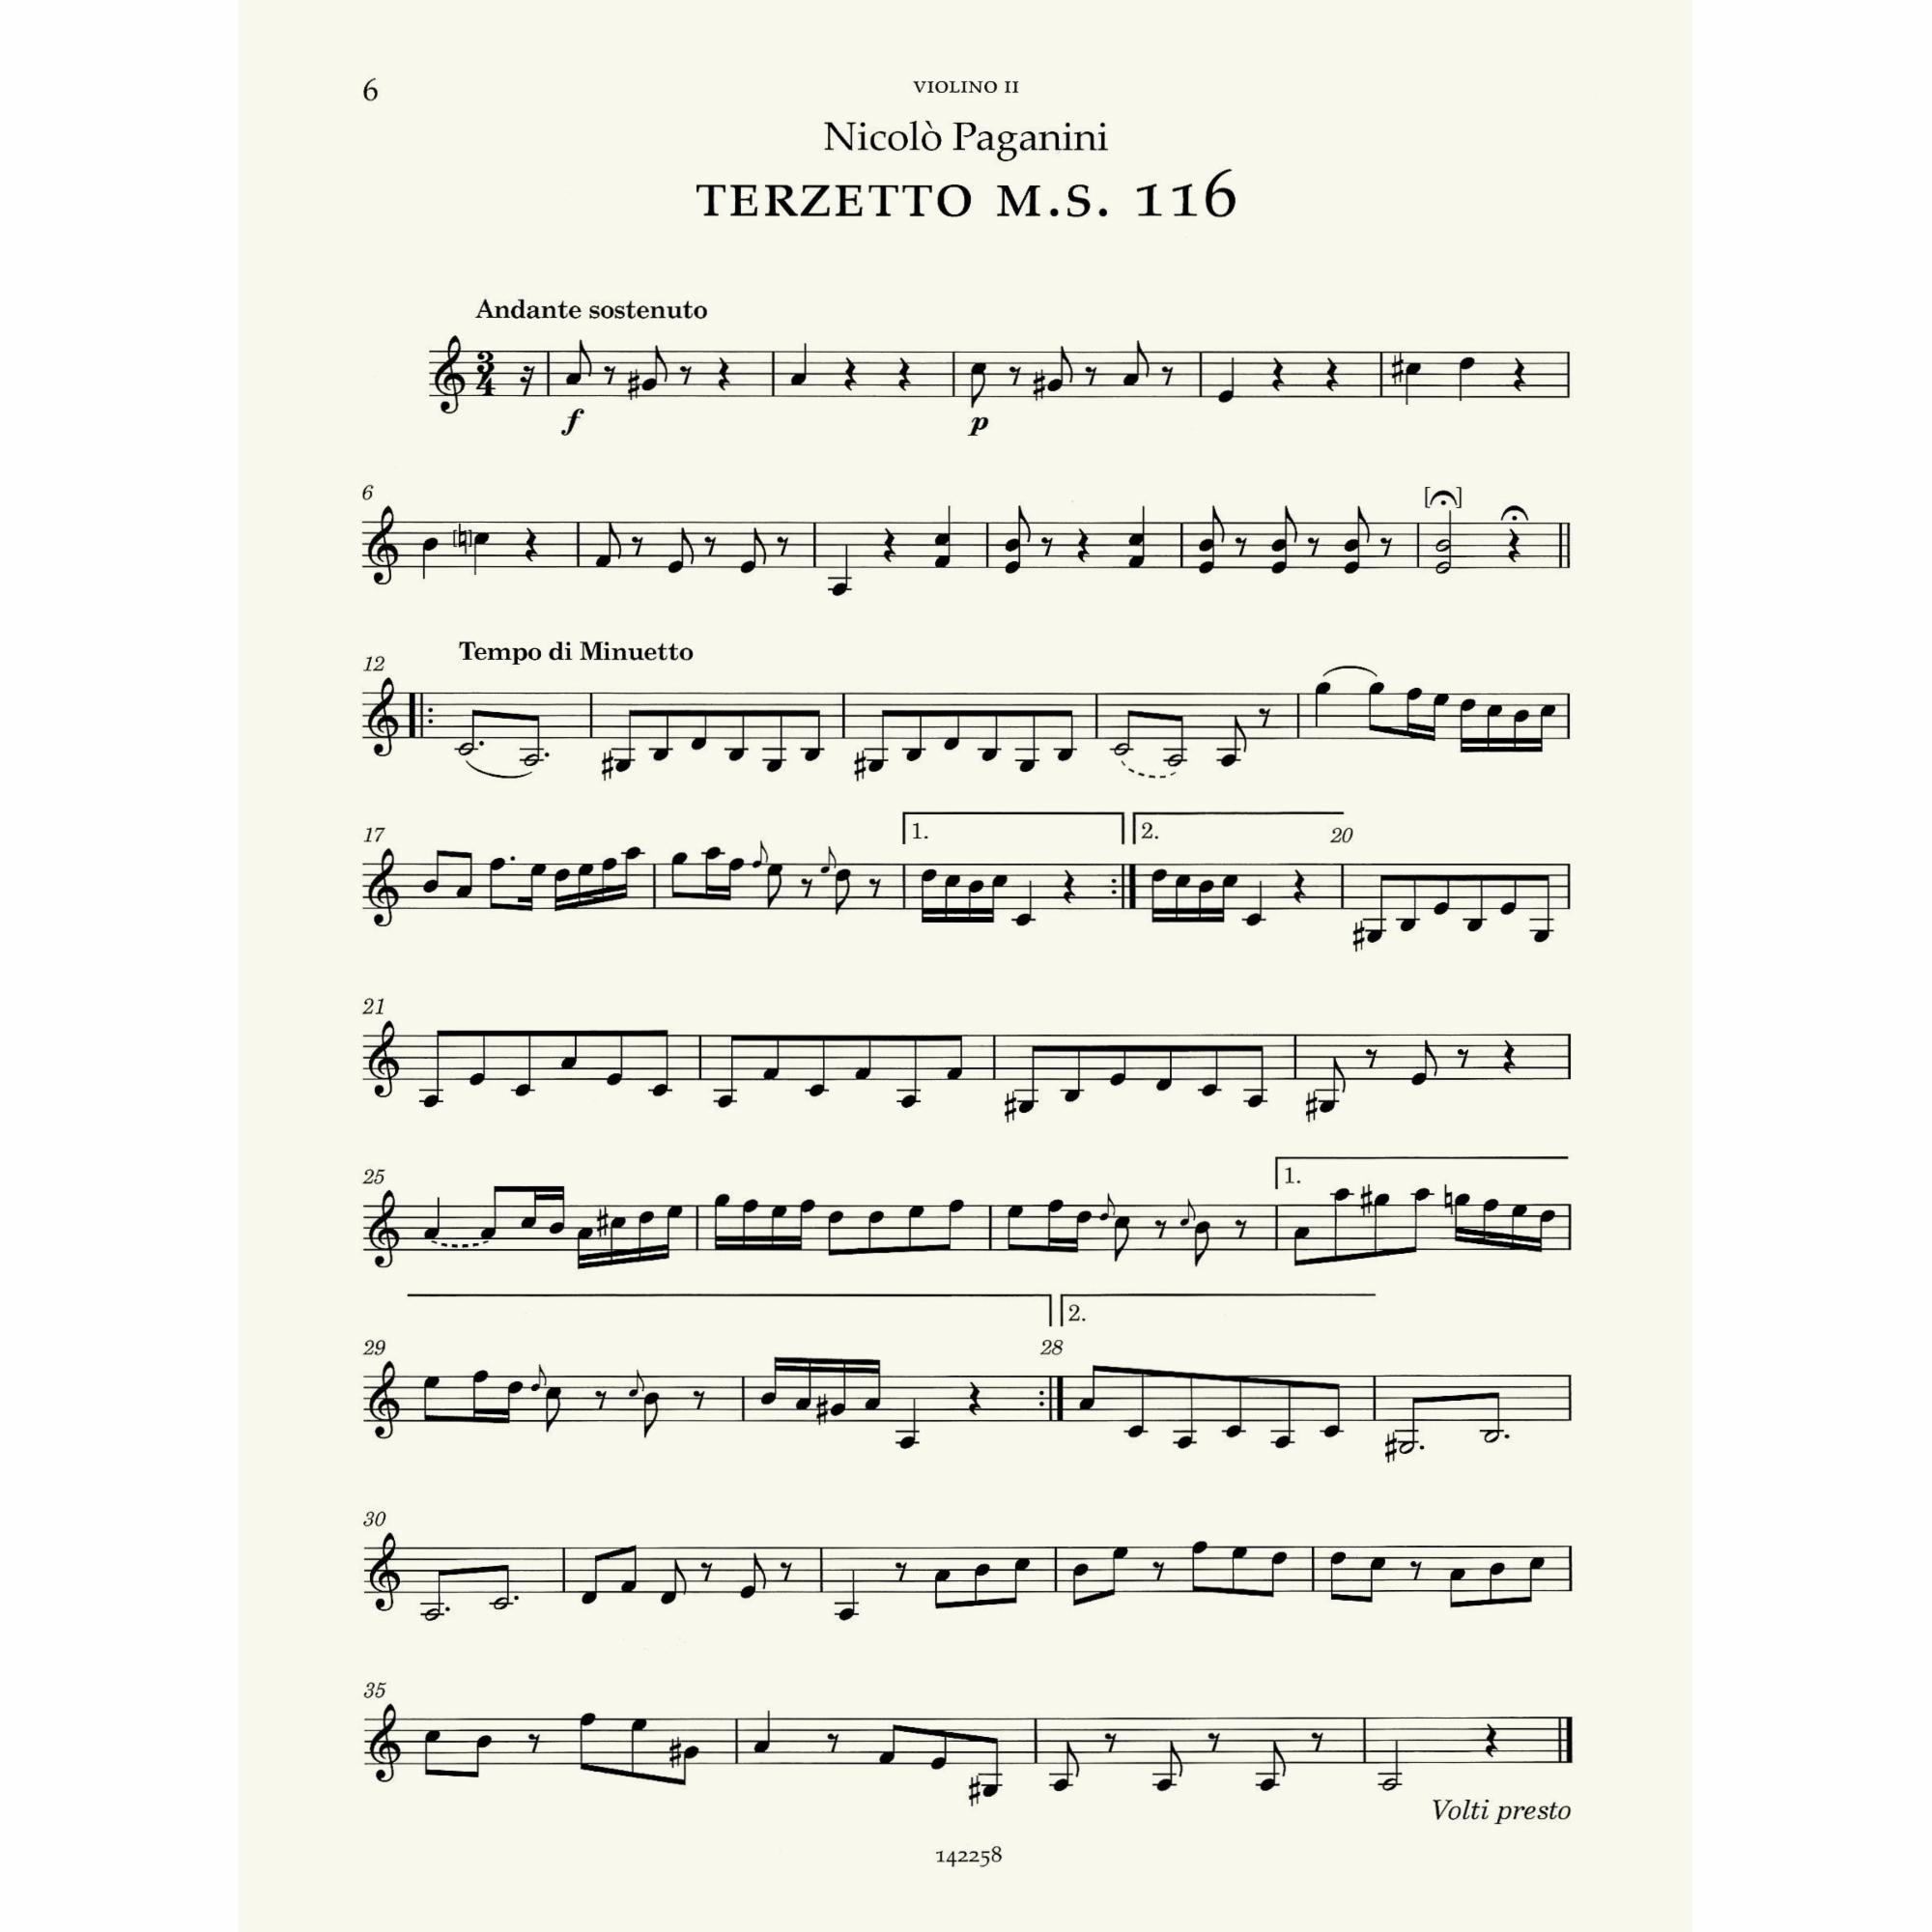 Sample: Violin II (Pg. 6)